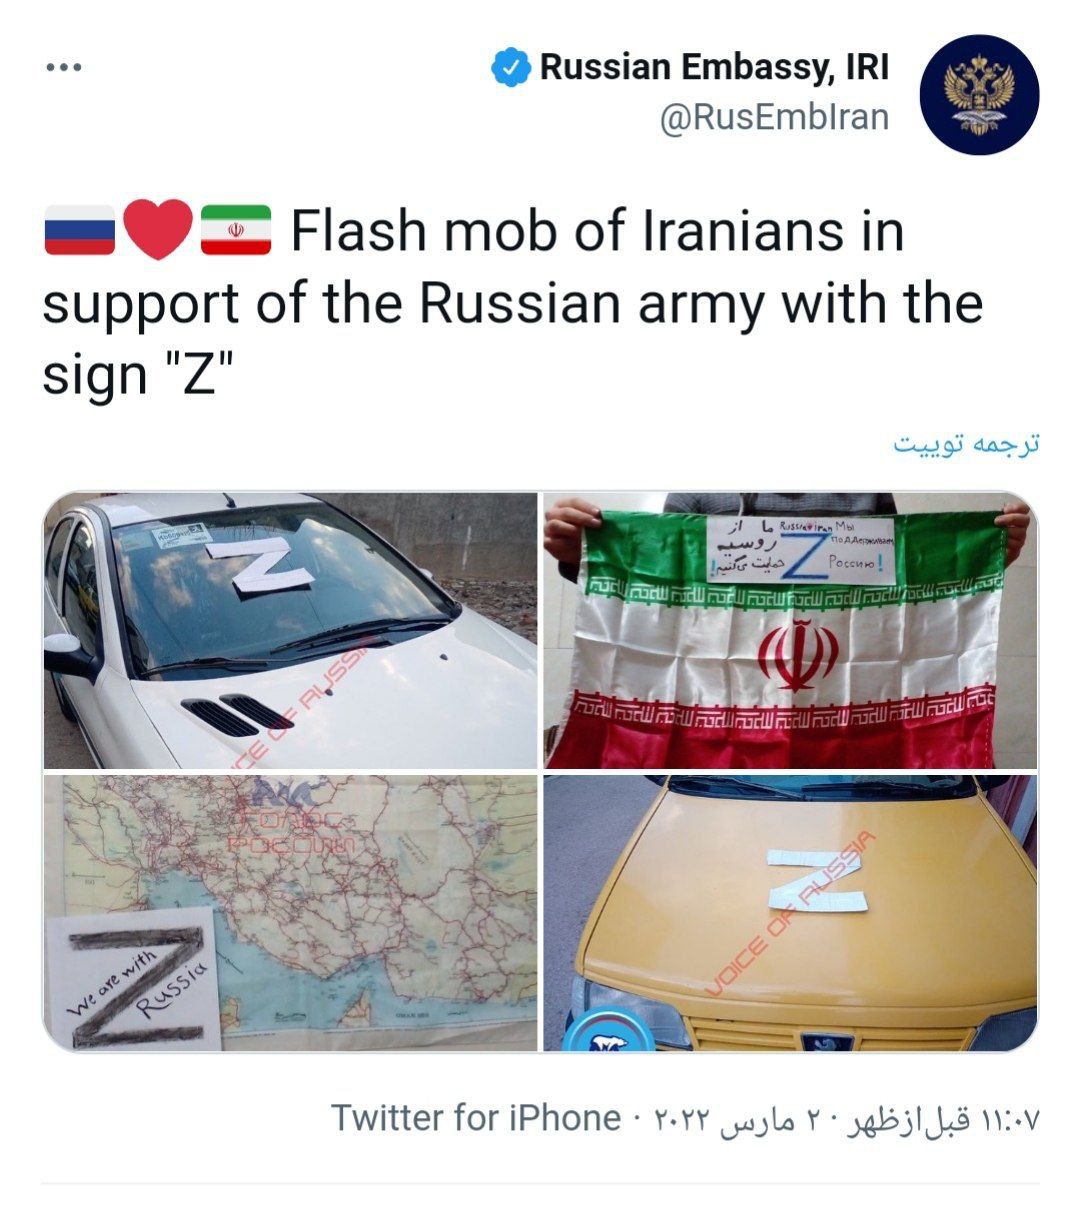 ادعای عجیب سفارت روسیه در تهران پیرامون حمایت ایرانی ها از ارتش روسیه! (عكس)